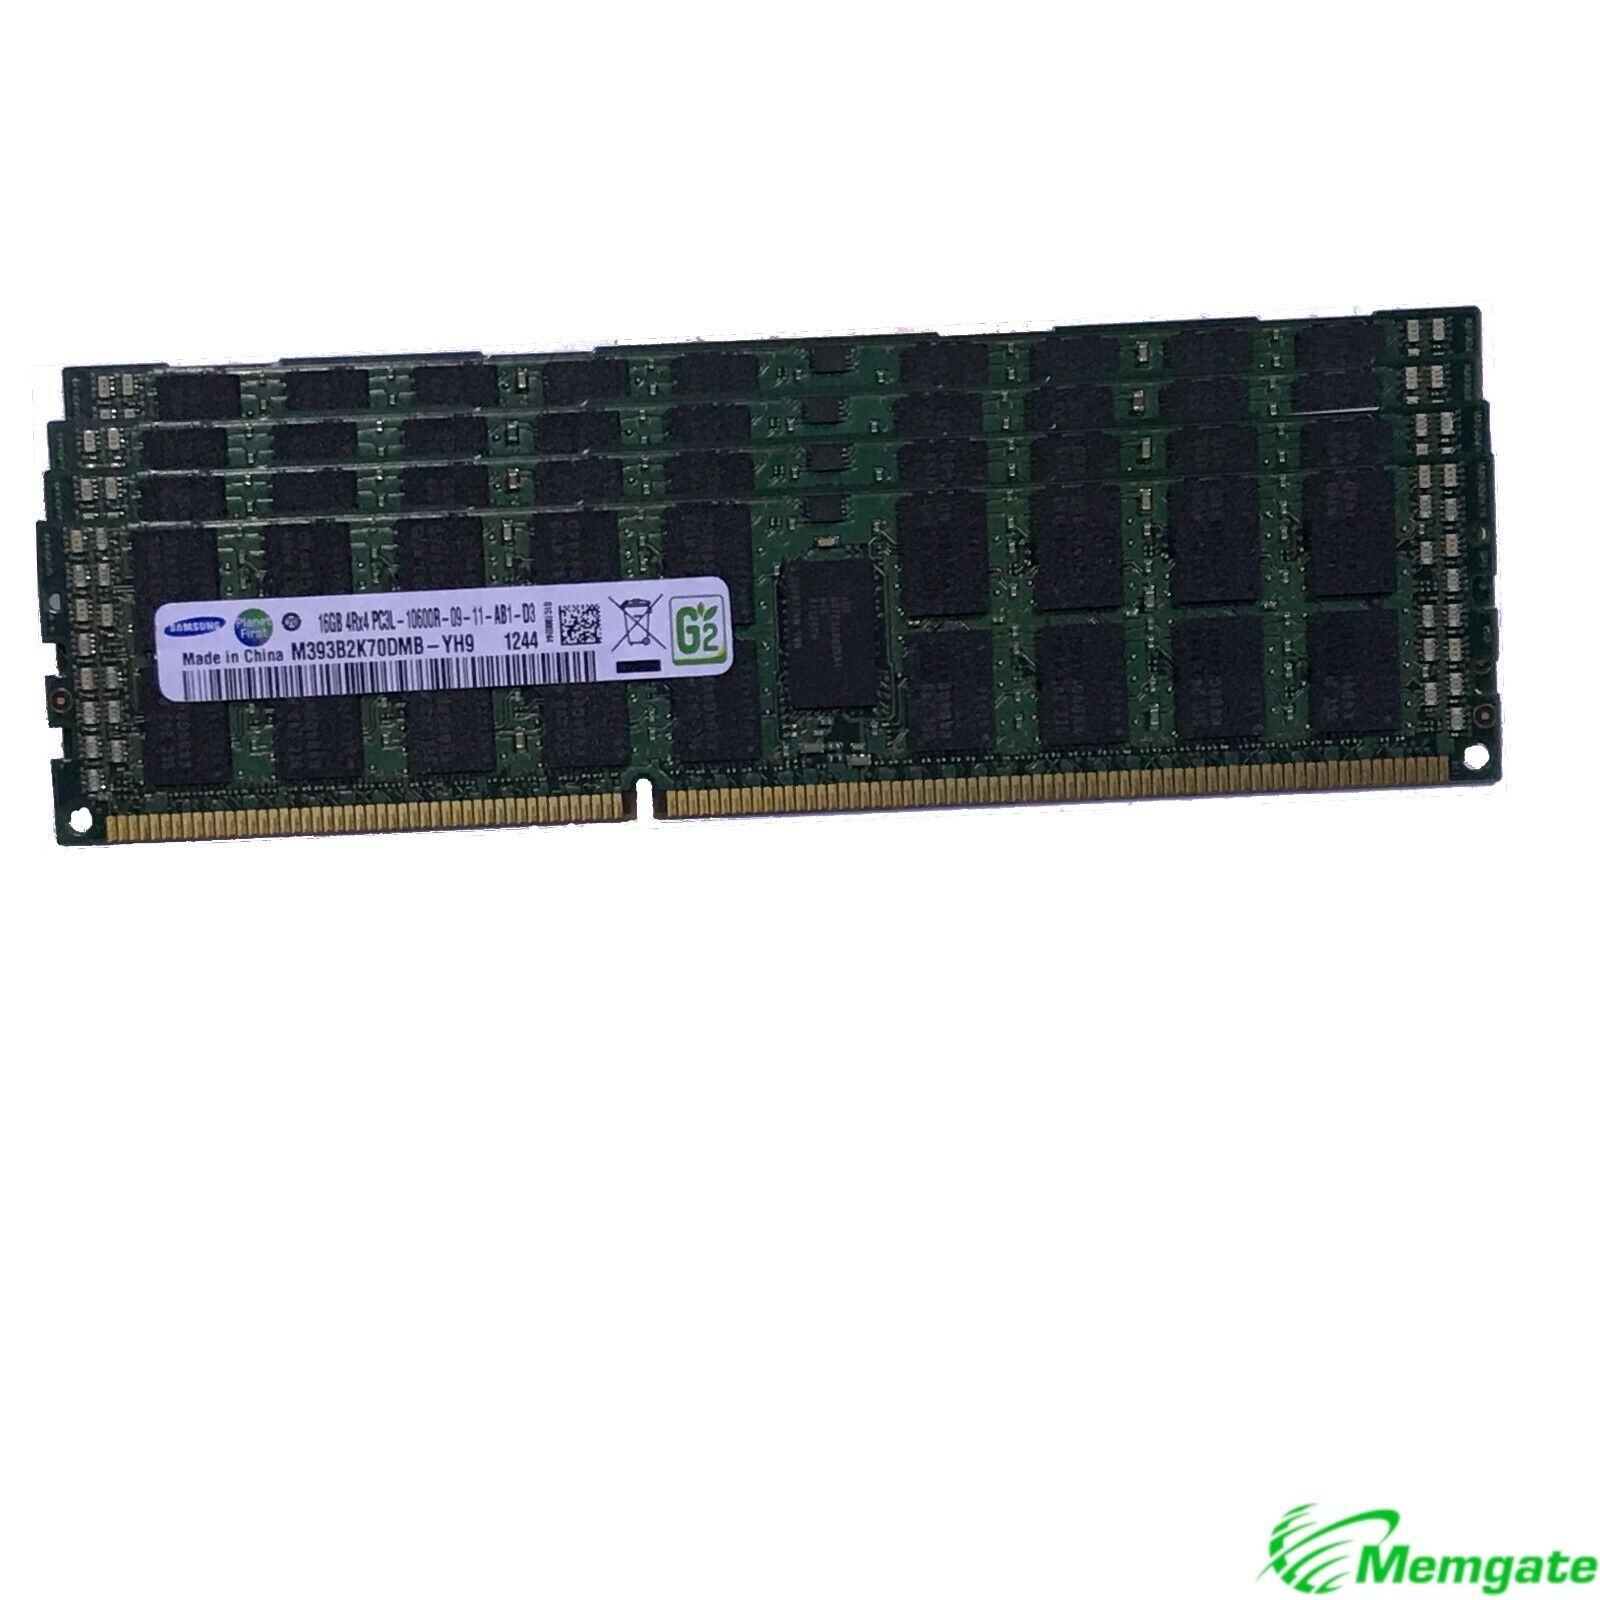 96GB (6x16GB) DDR3 1333 4Rx4 Memory For Dell PowerEdge R520 R610 R620 R710 R715